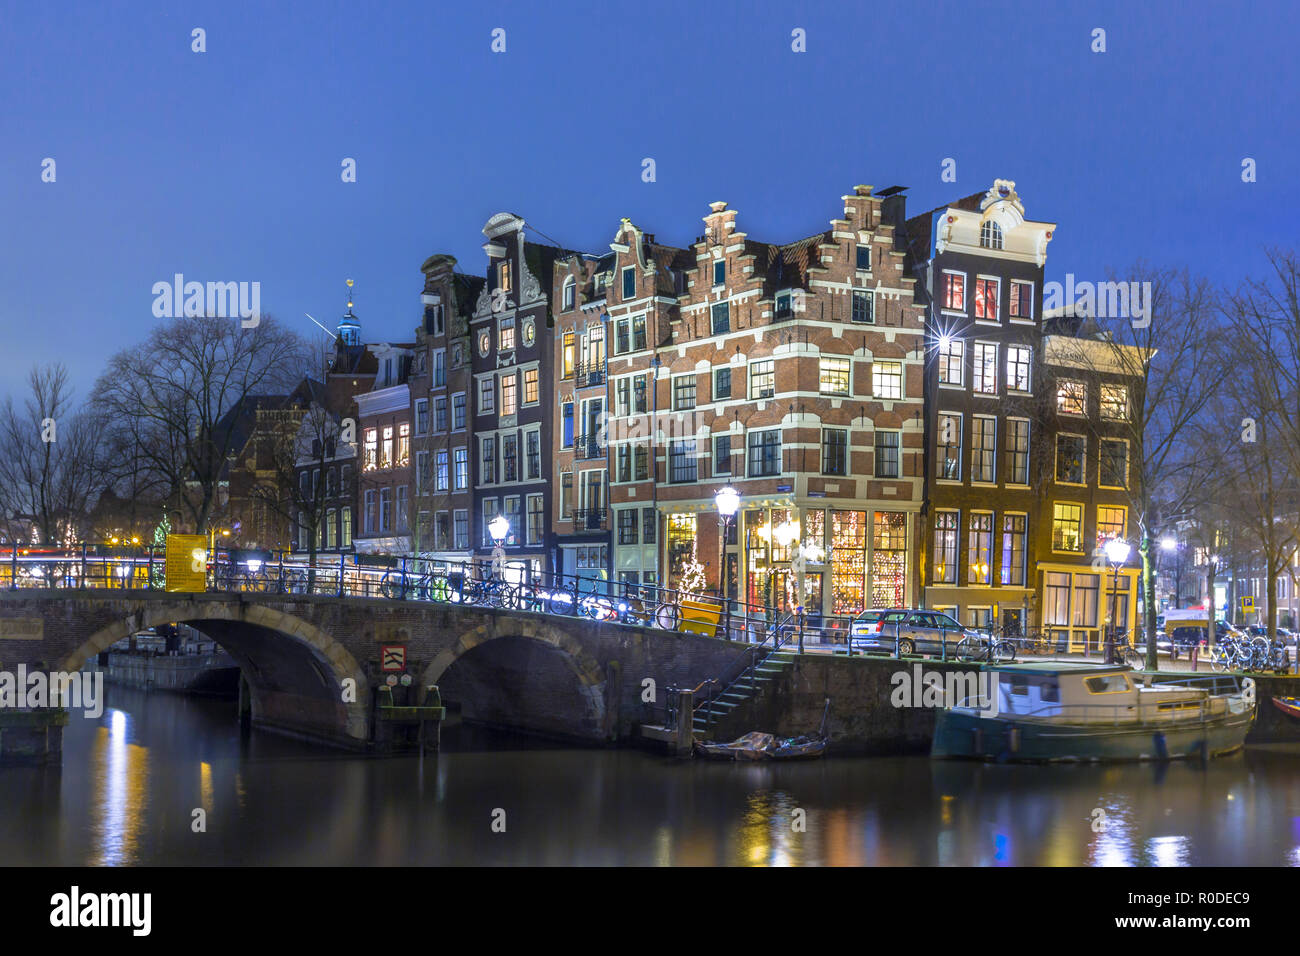 Photo de nuit de maisons traditionnelles colorées, à l'angle de brouwersgracht et Prinsengracht dans le centre-ville de site du patrimoine mondial de l'Ams Banque D'Images